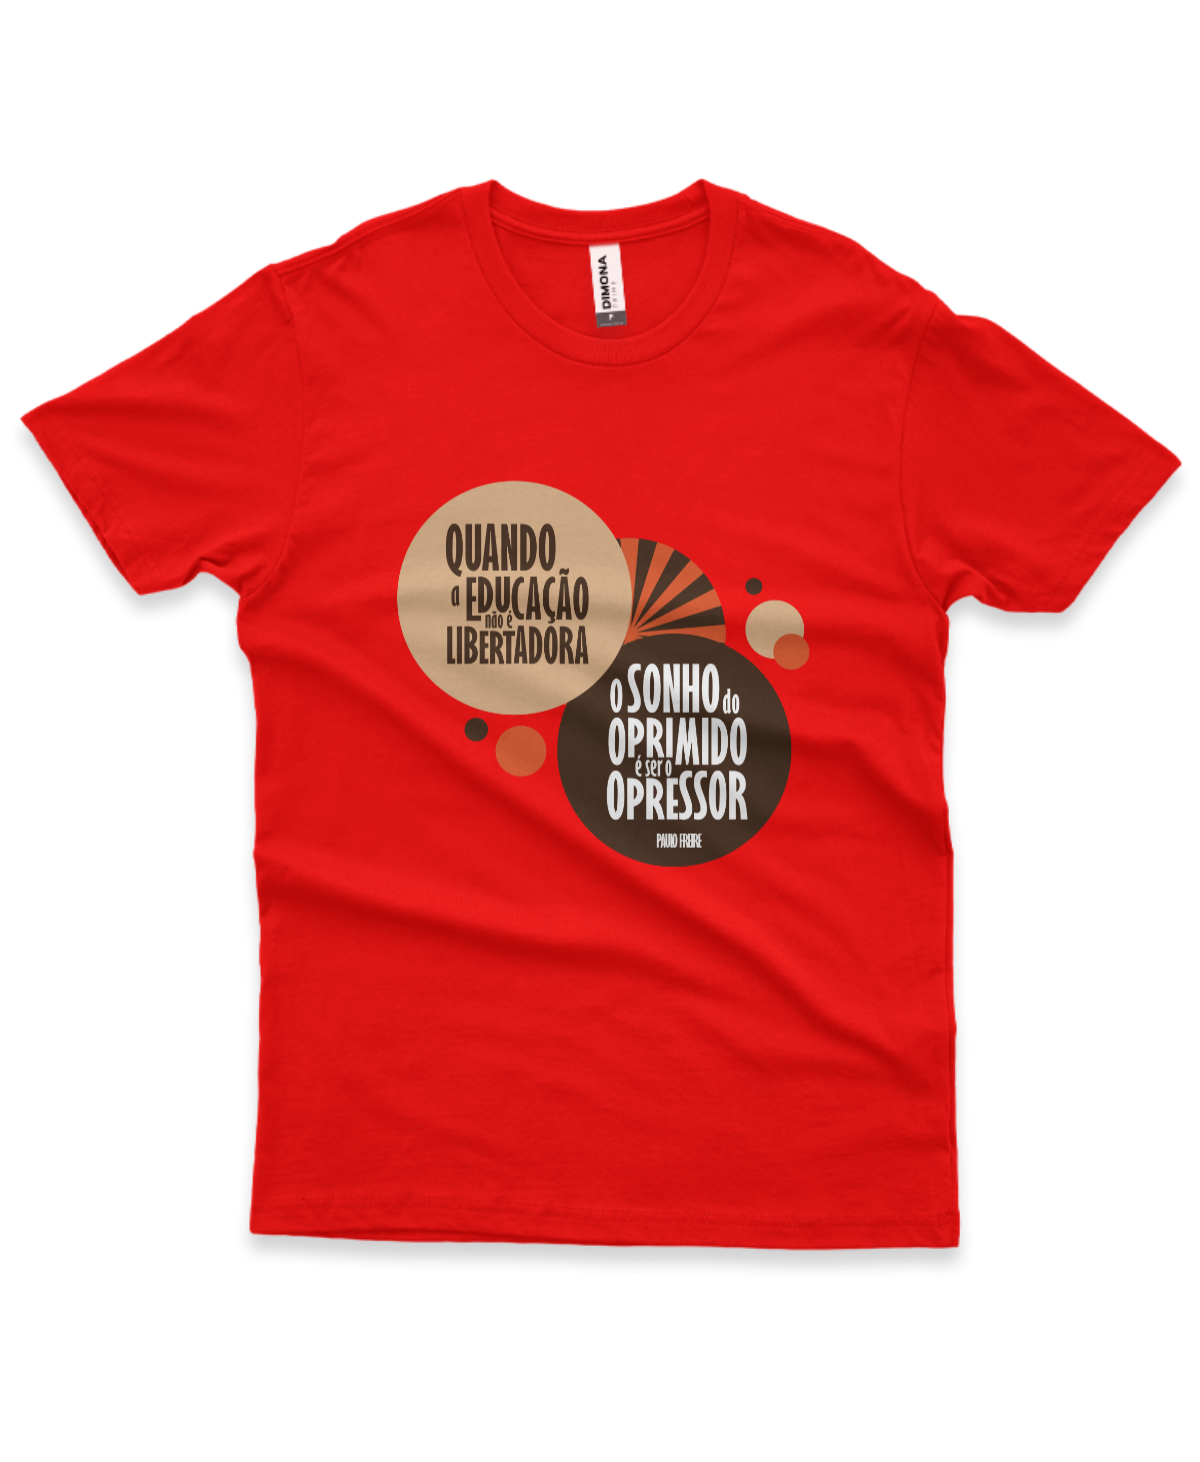 camiseta masculina cor vermelha com a frase "quando a educação não é libertadora, o sonho do oprimido é ser o opressor"